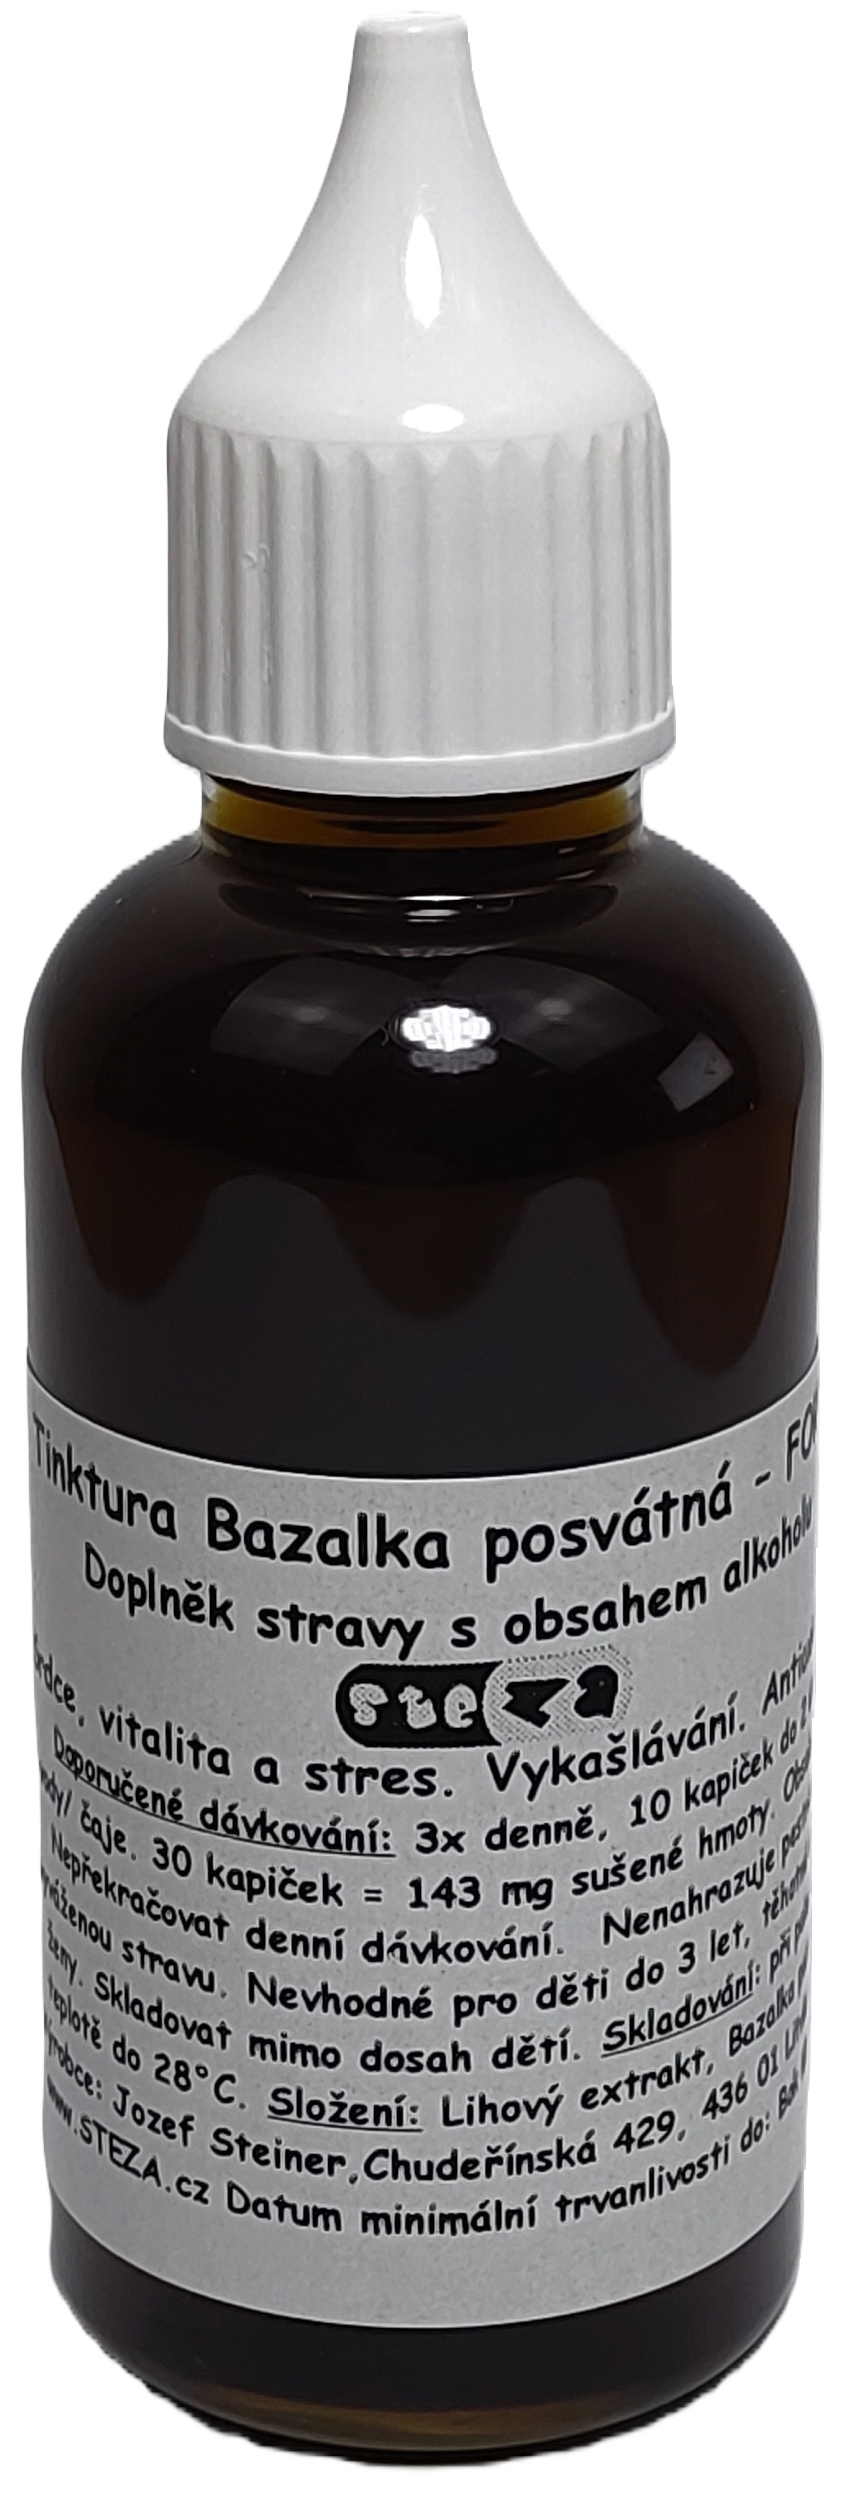 STEZA - Tinktura Bazalka posvátná - FORTE 50 ml. (Tinktura Bazalka posvátná)